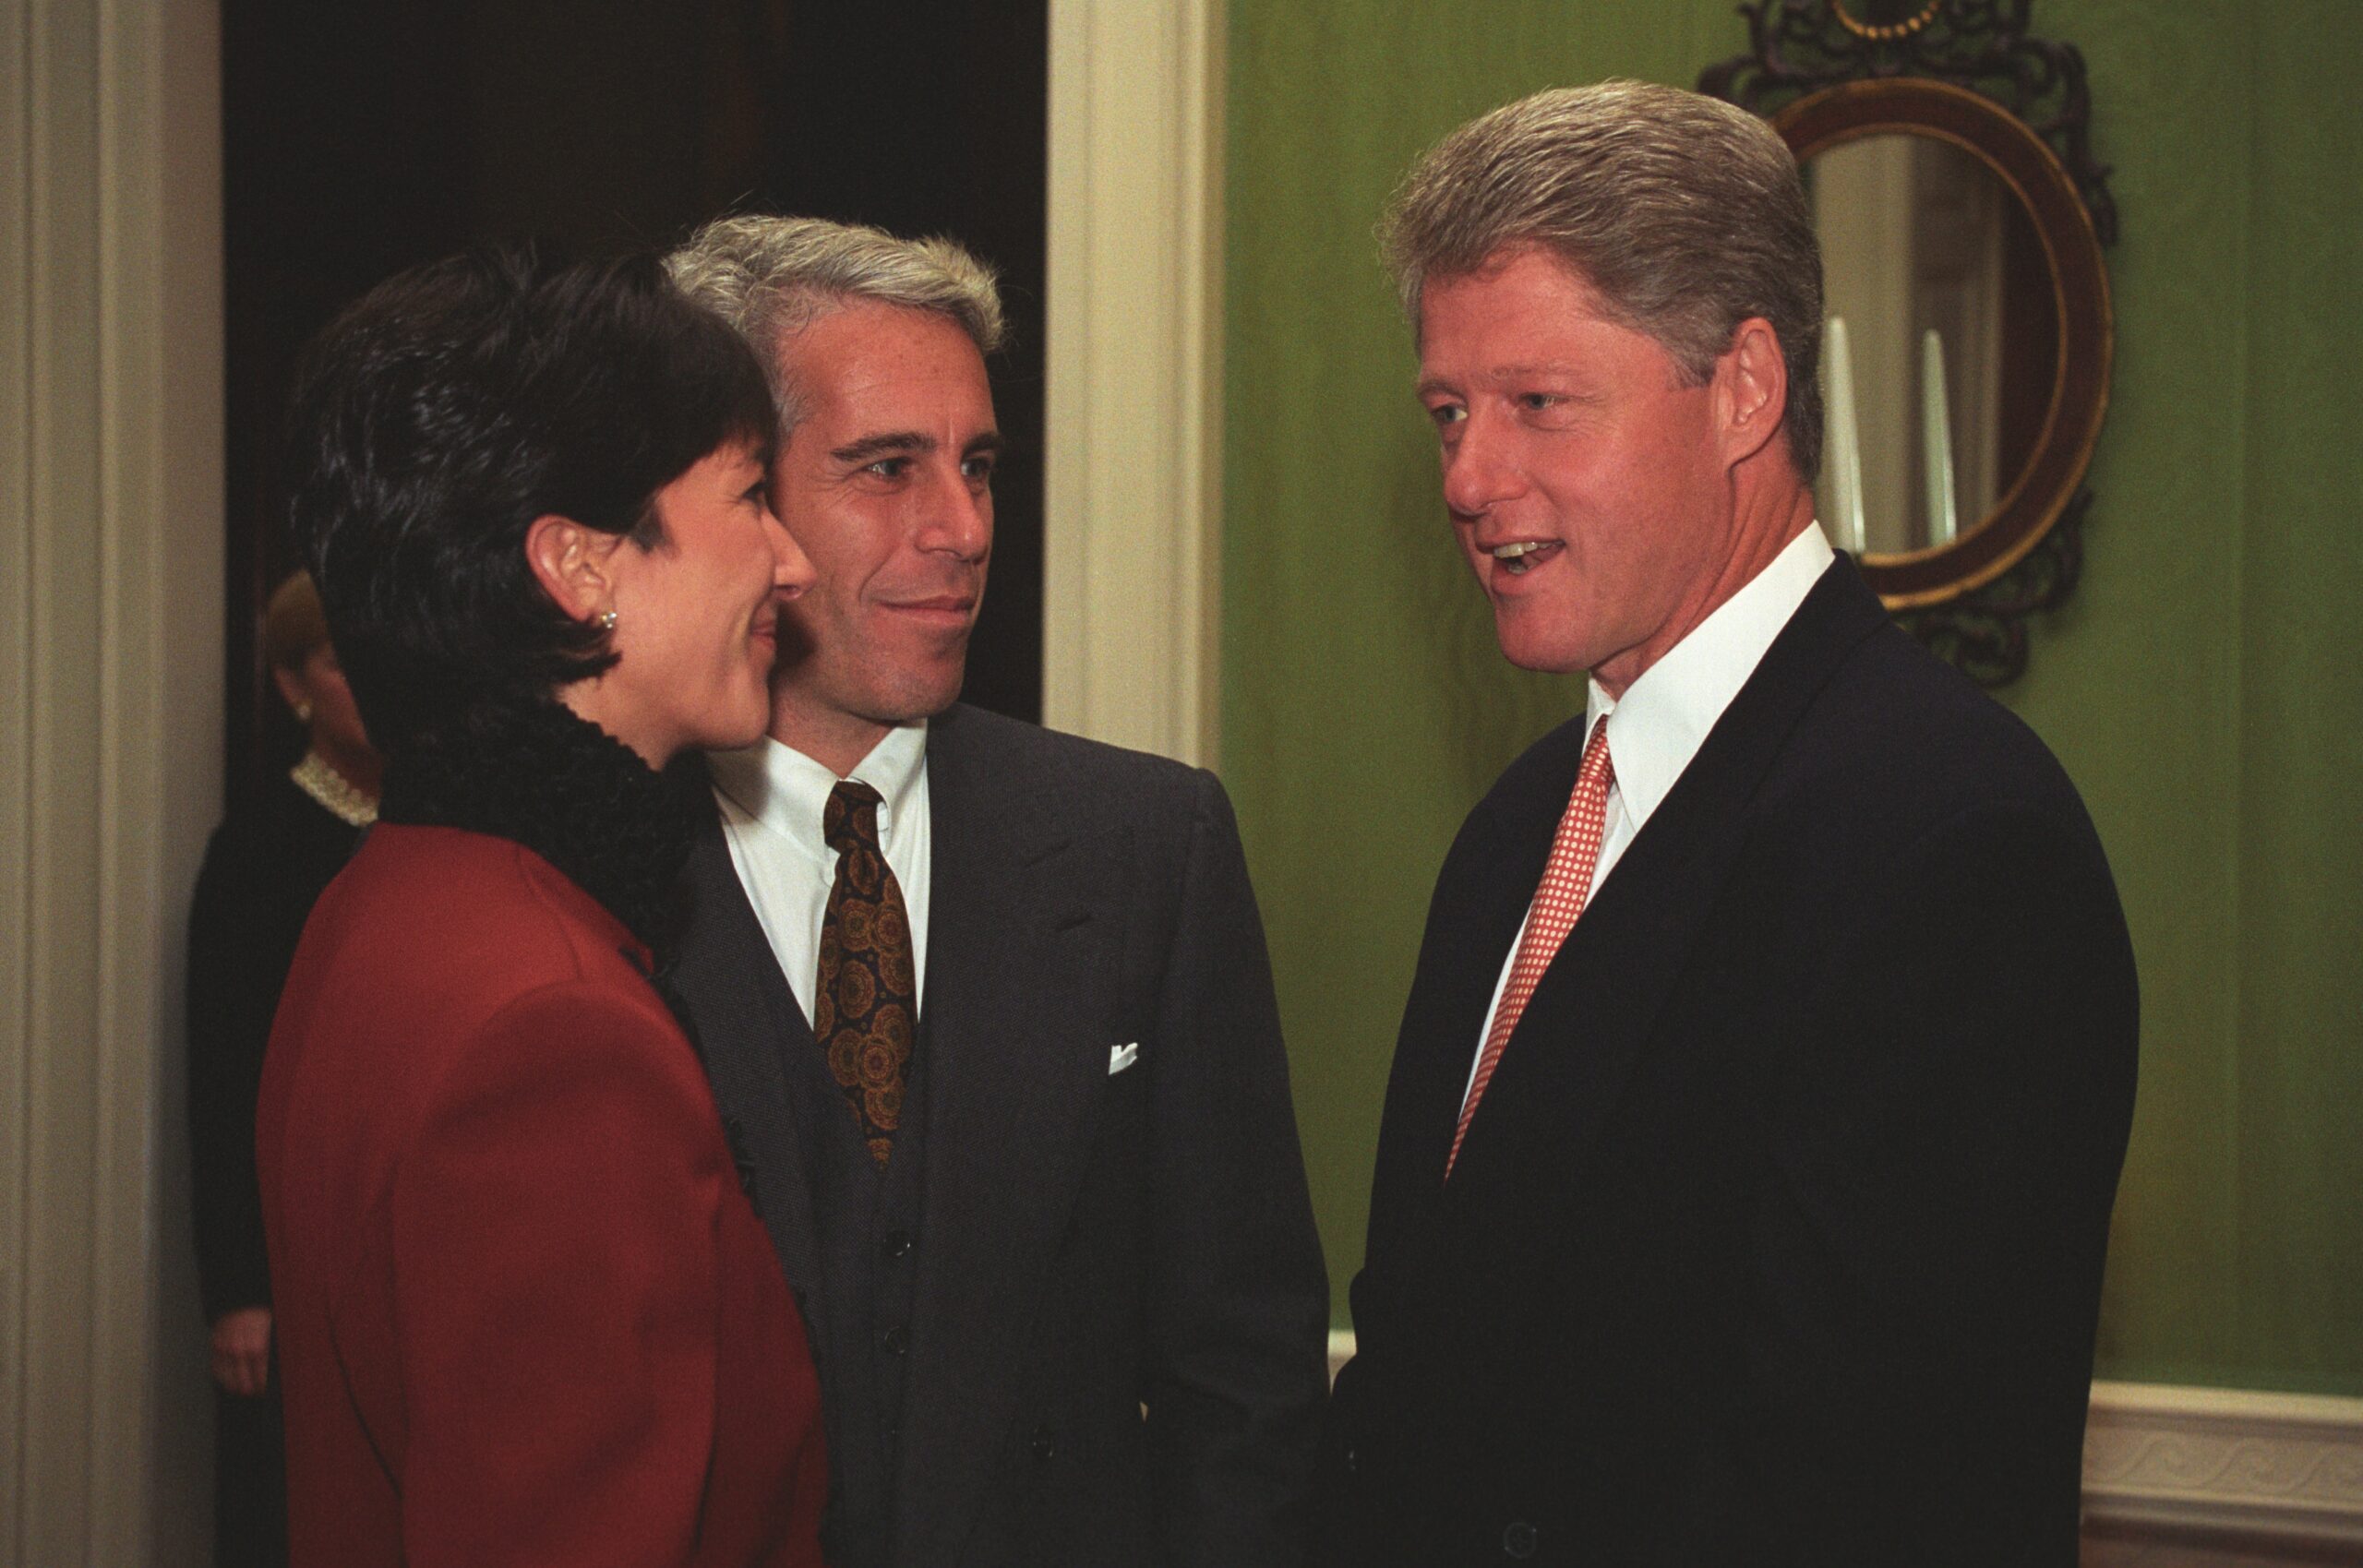 Según la Biblioteca y Museo Presidencial William J. Clinton, el expresidente estadounidense Bill Clinton fue fotografiado con Jeffrey Epstein y Ghislaine Maxwell en la Casa Blanca el 29 de septiembre de 1993.